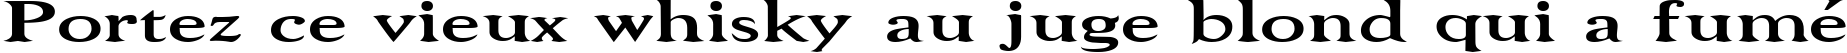 Пример написания шрифтом Niew CroMagnon Wide текста на французском